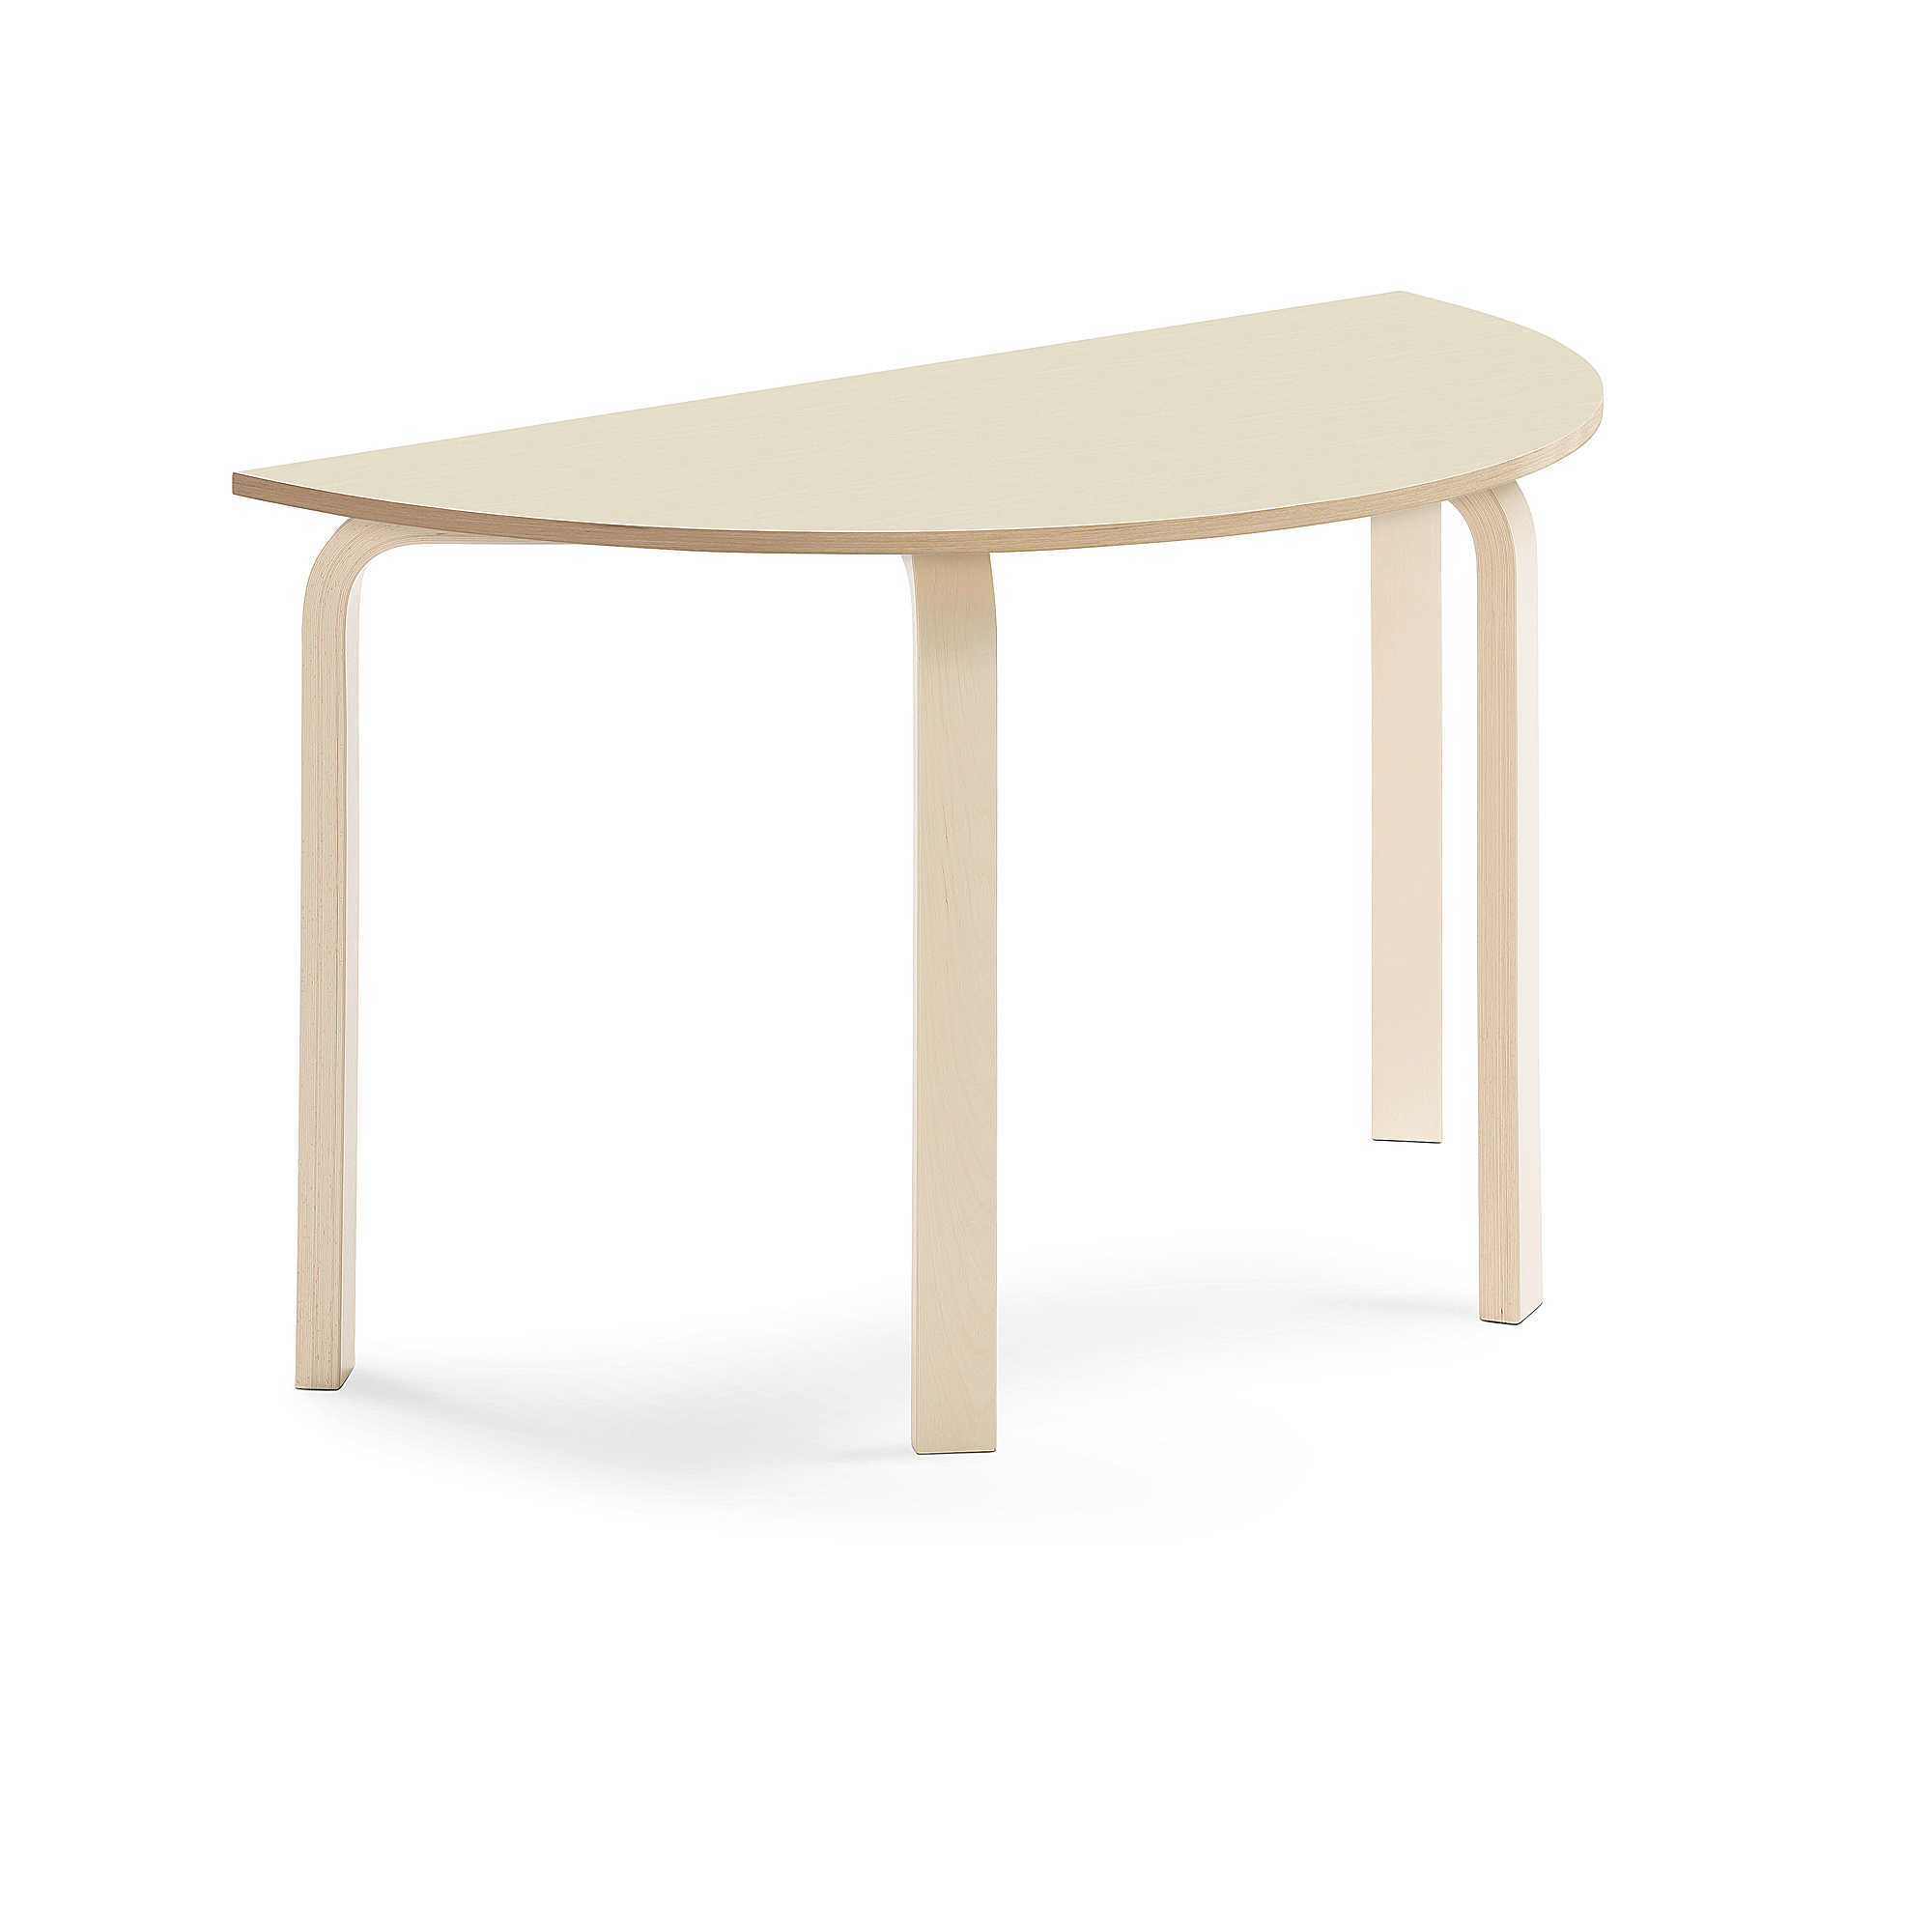 Stůl ELTON, půlkruh, 1200x600x710 mm, bříza, akustická HPL deska, bříza